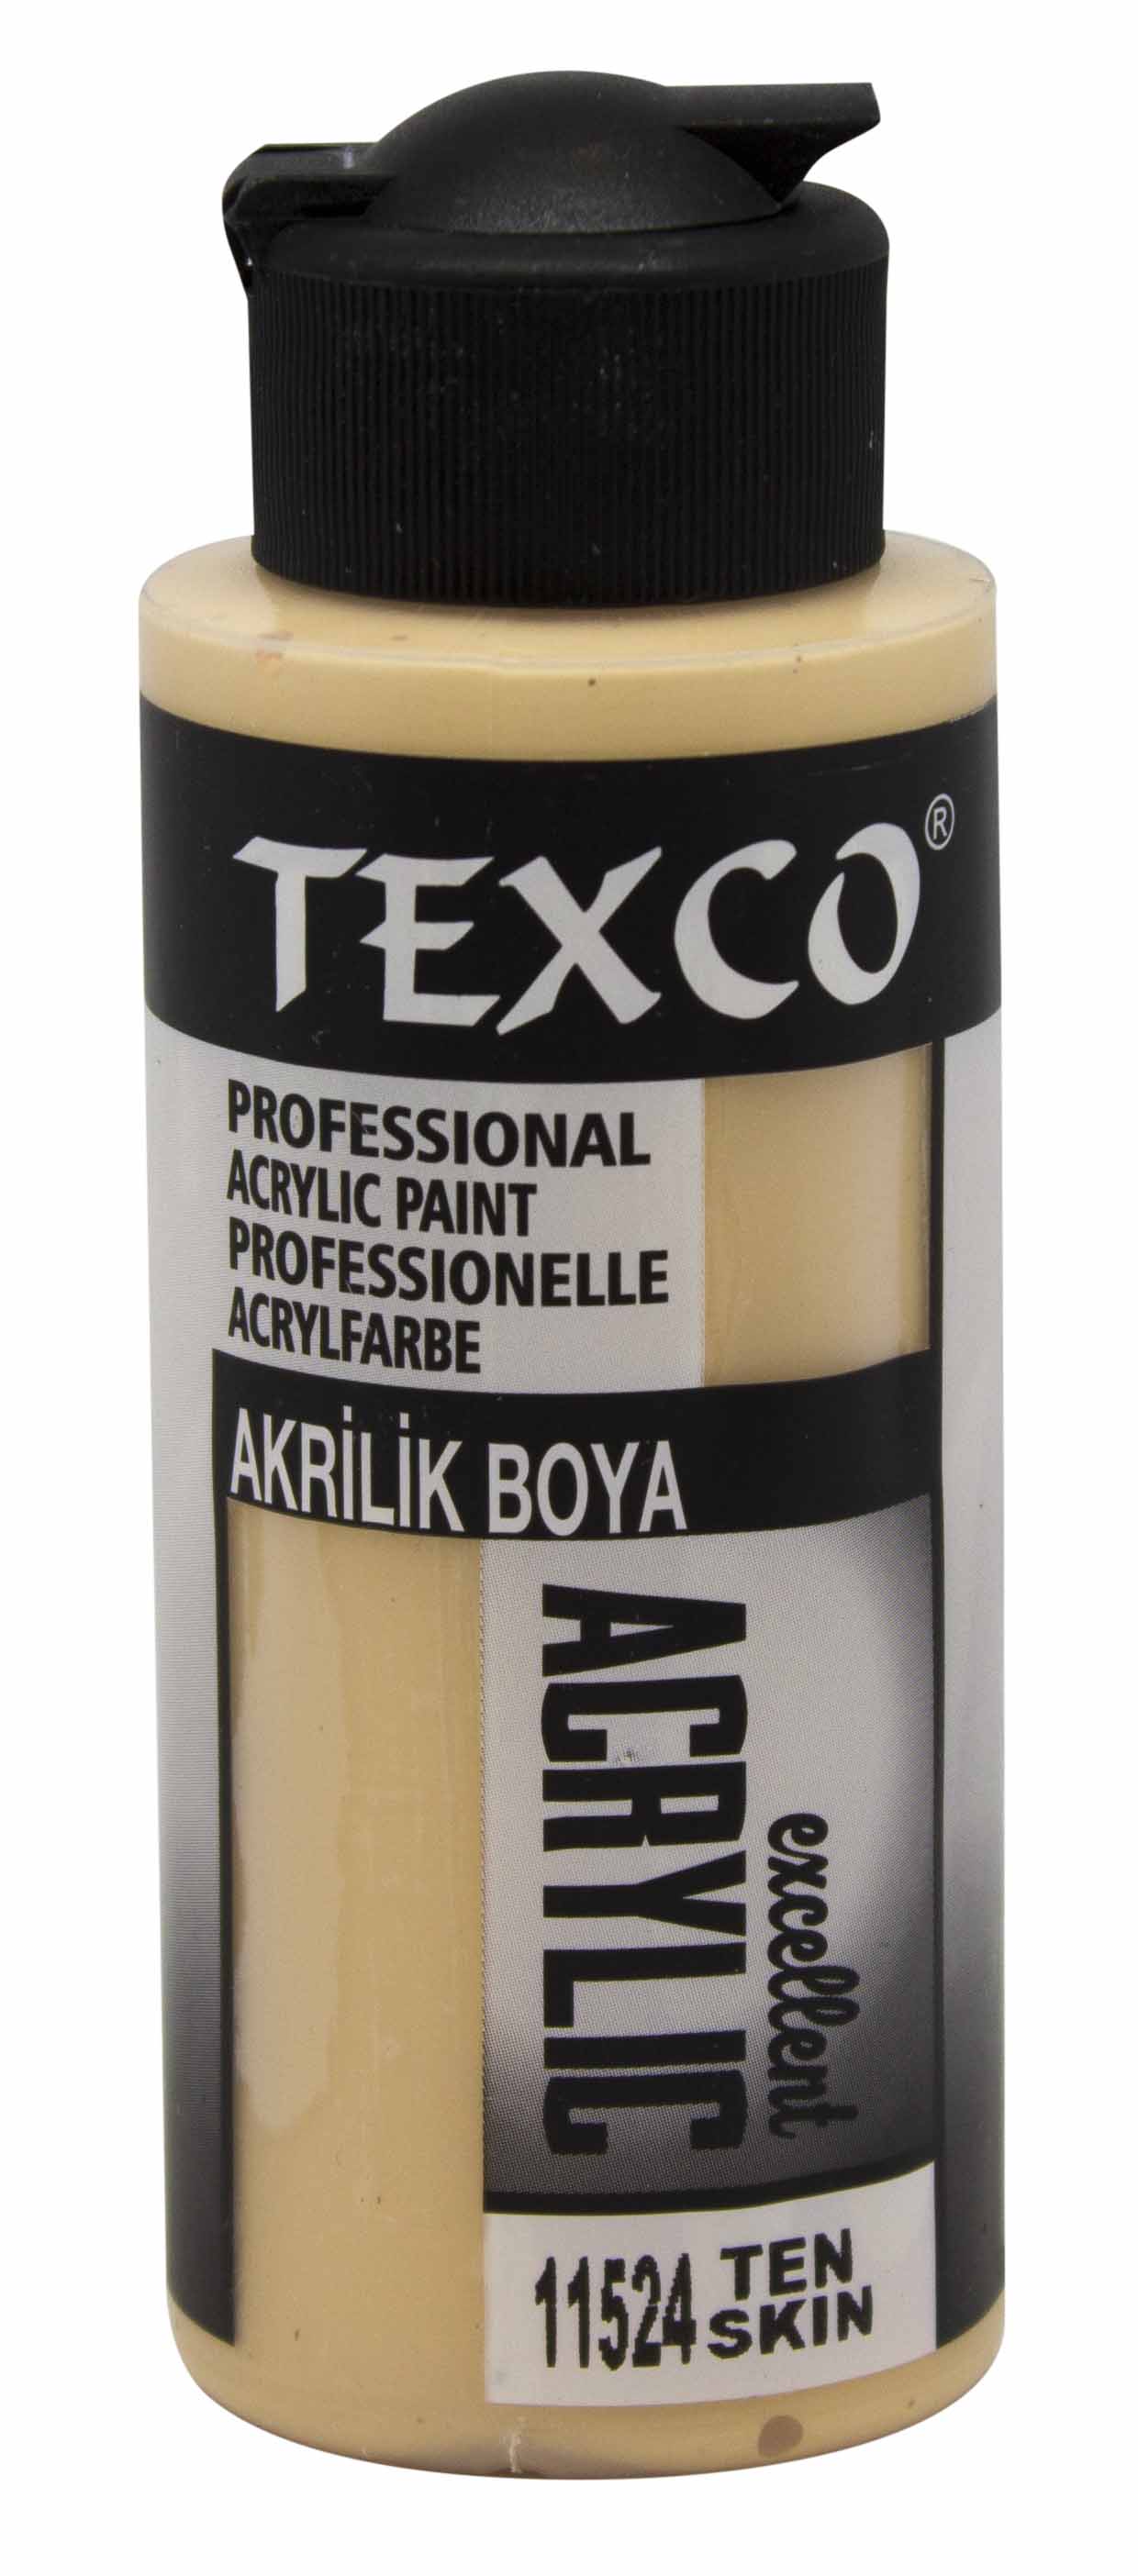 Texco Excellent Akrilik Boya 11524-Ten 110 cc